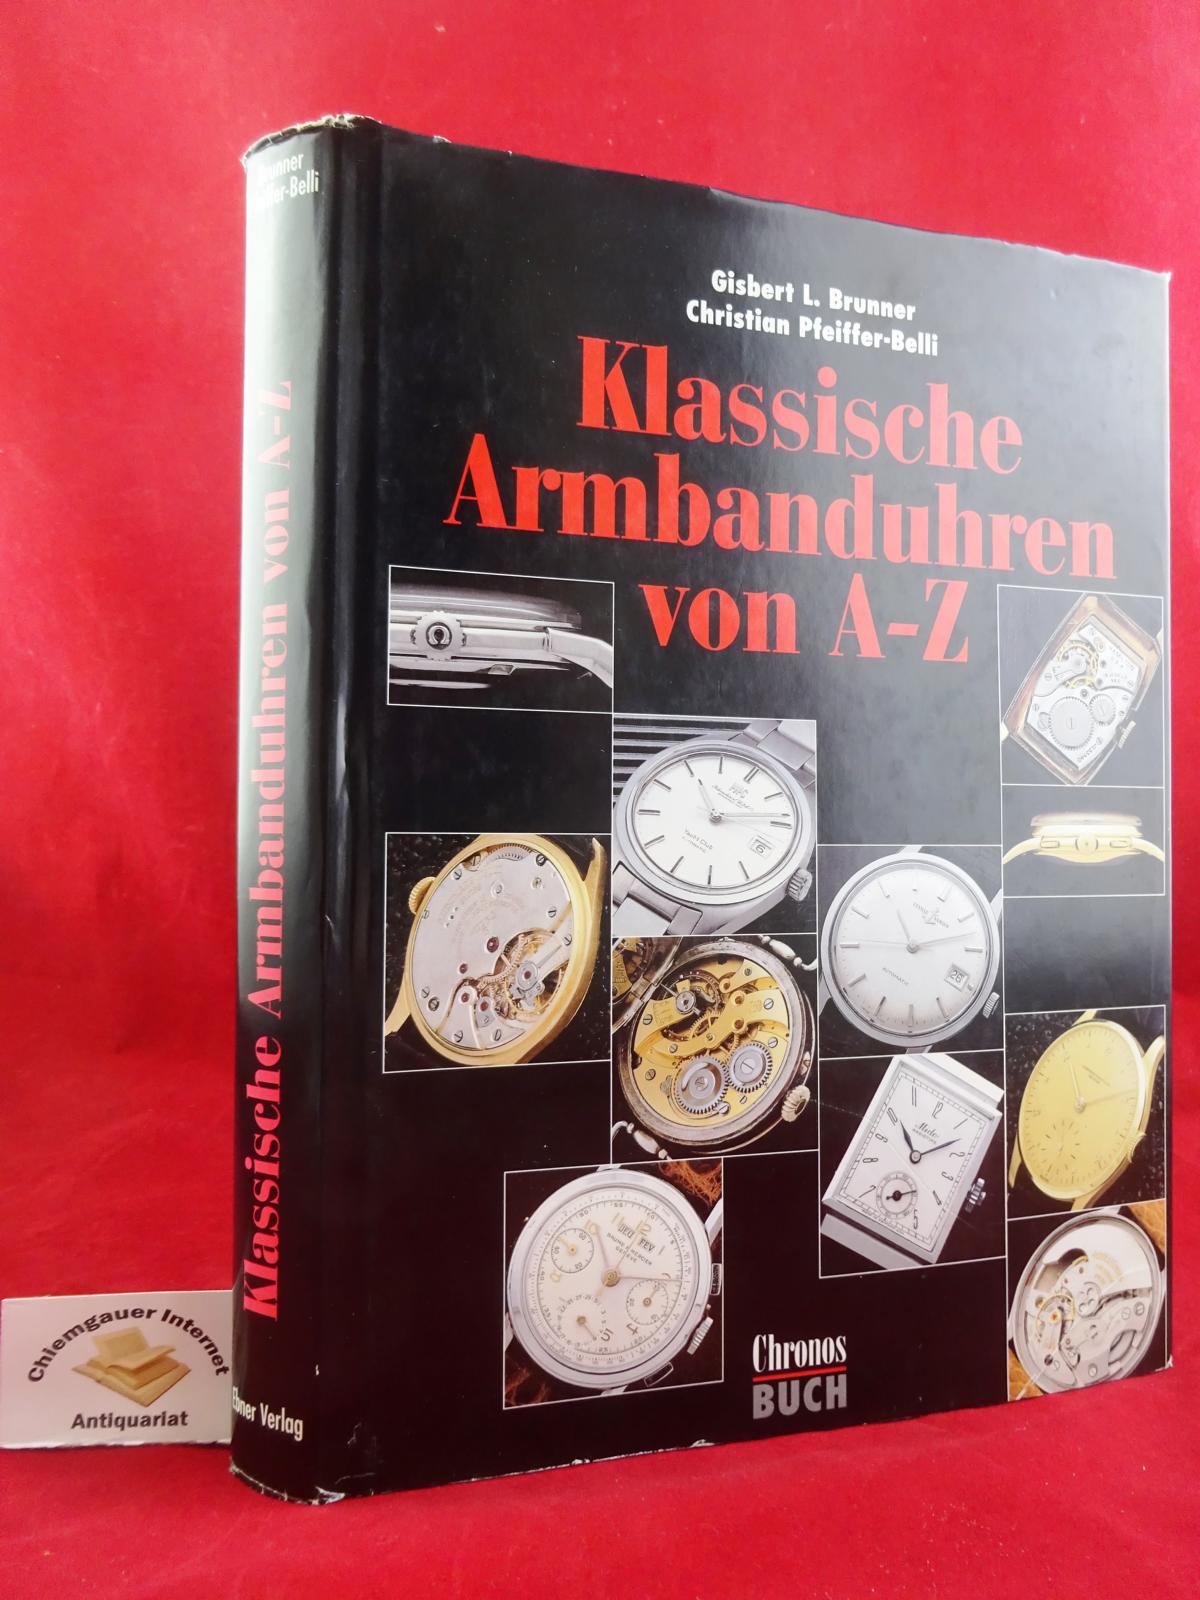 Klassische Armbanduhren von A - Z : über 200 Sammlermodelle in Portraits. Fotographien: Alexander Bauer - Brunner, Gisbert L., Christian Pfeiffer-Belli und Alexander Bauer